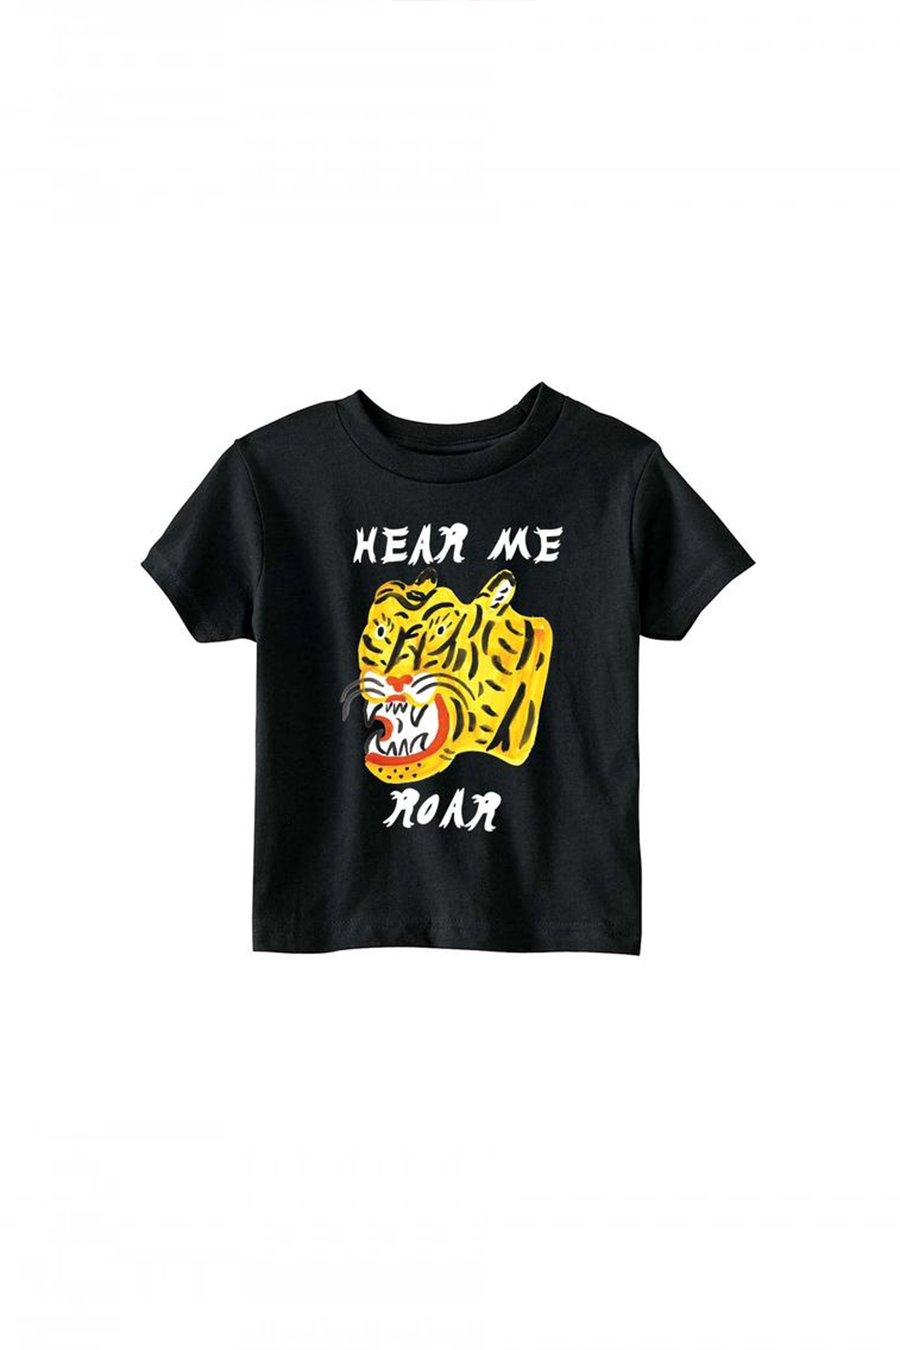 Hear Me Roar Tee | Black - Main Image Number 1 of 2